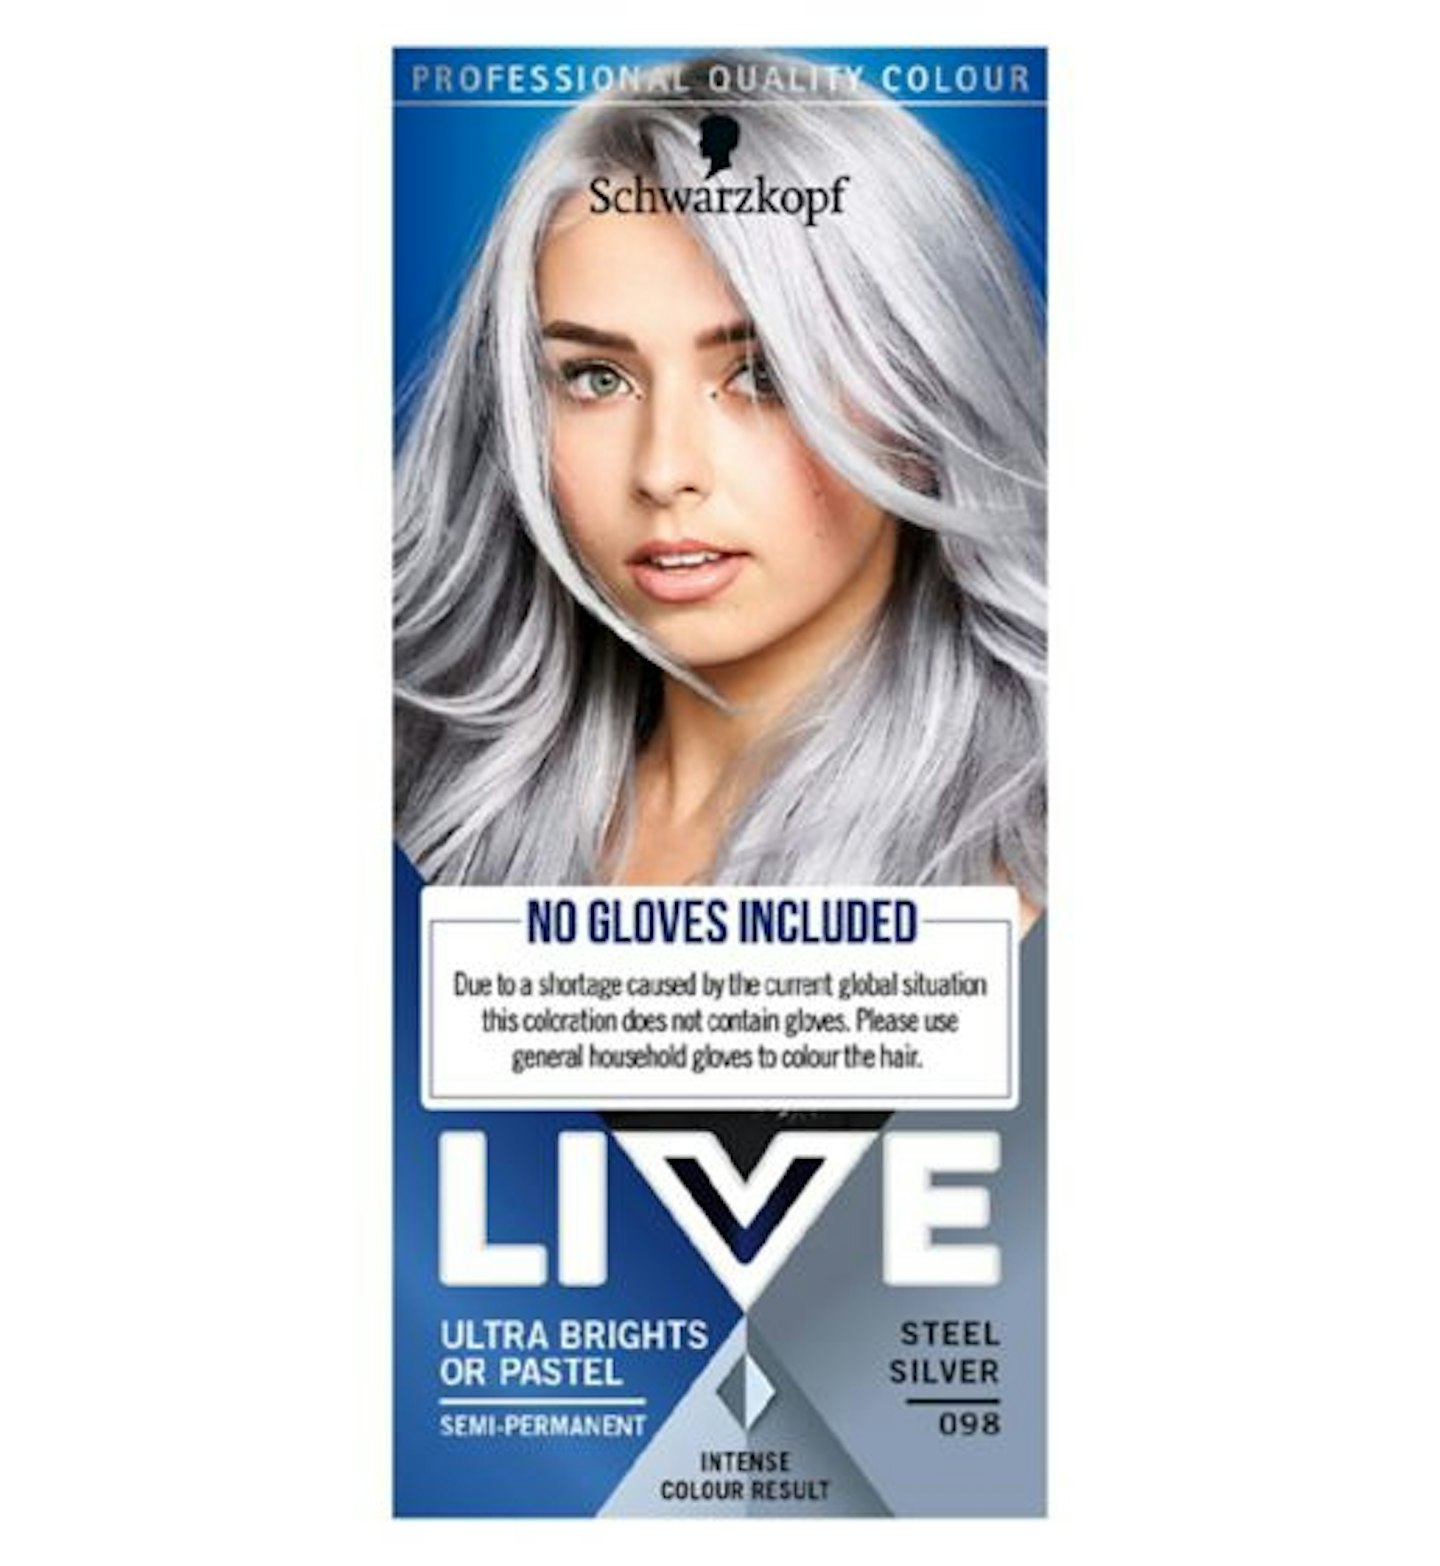 Schwarzkopf, LIVE Steel Silver 098 Semi-Permanent Hair Dye, £5.79